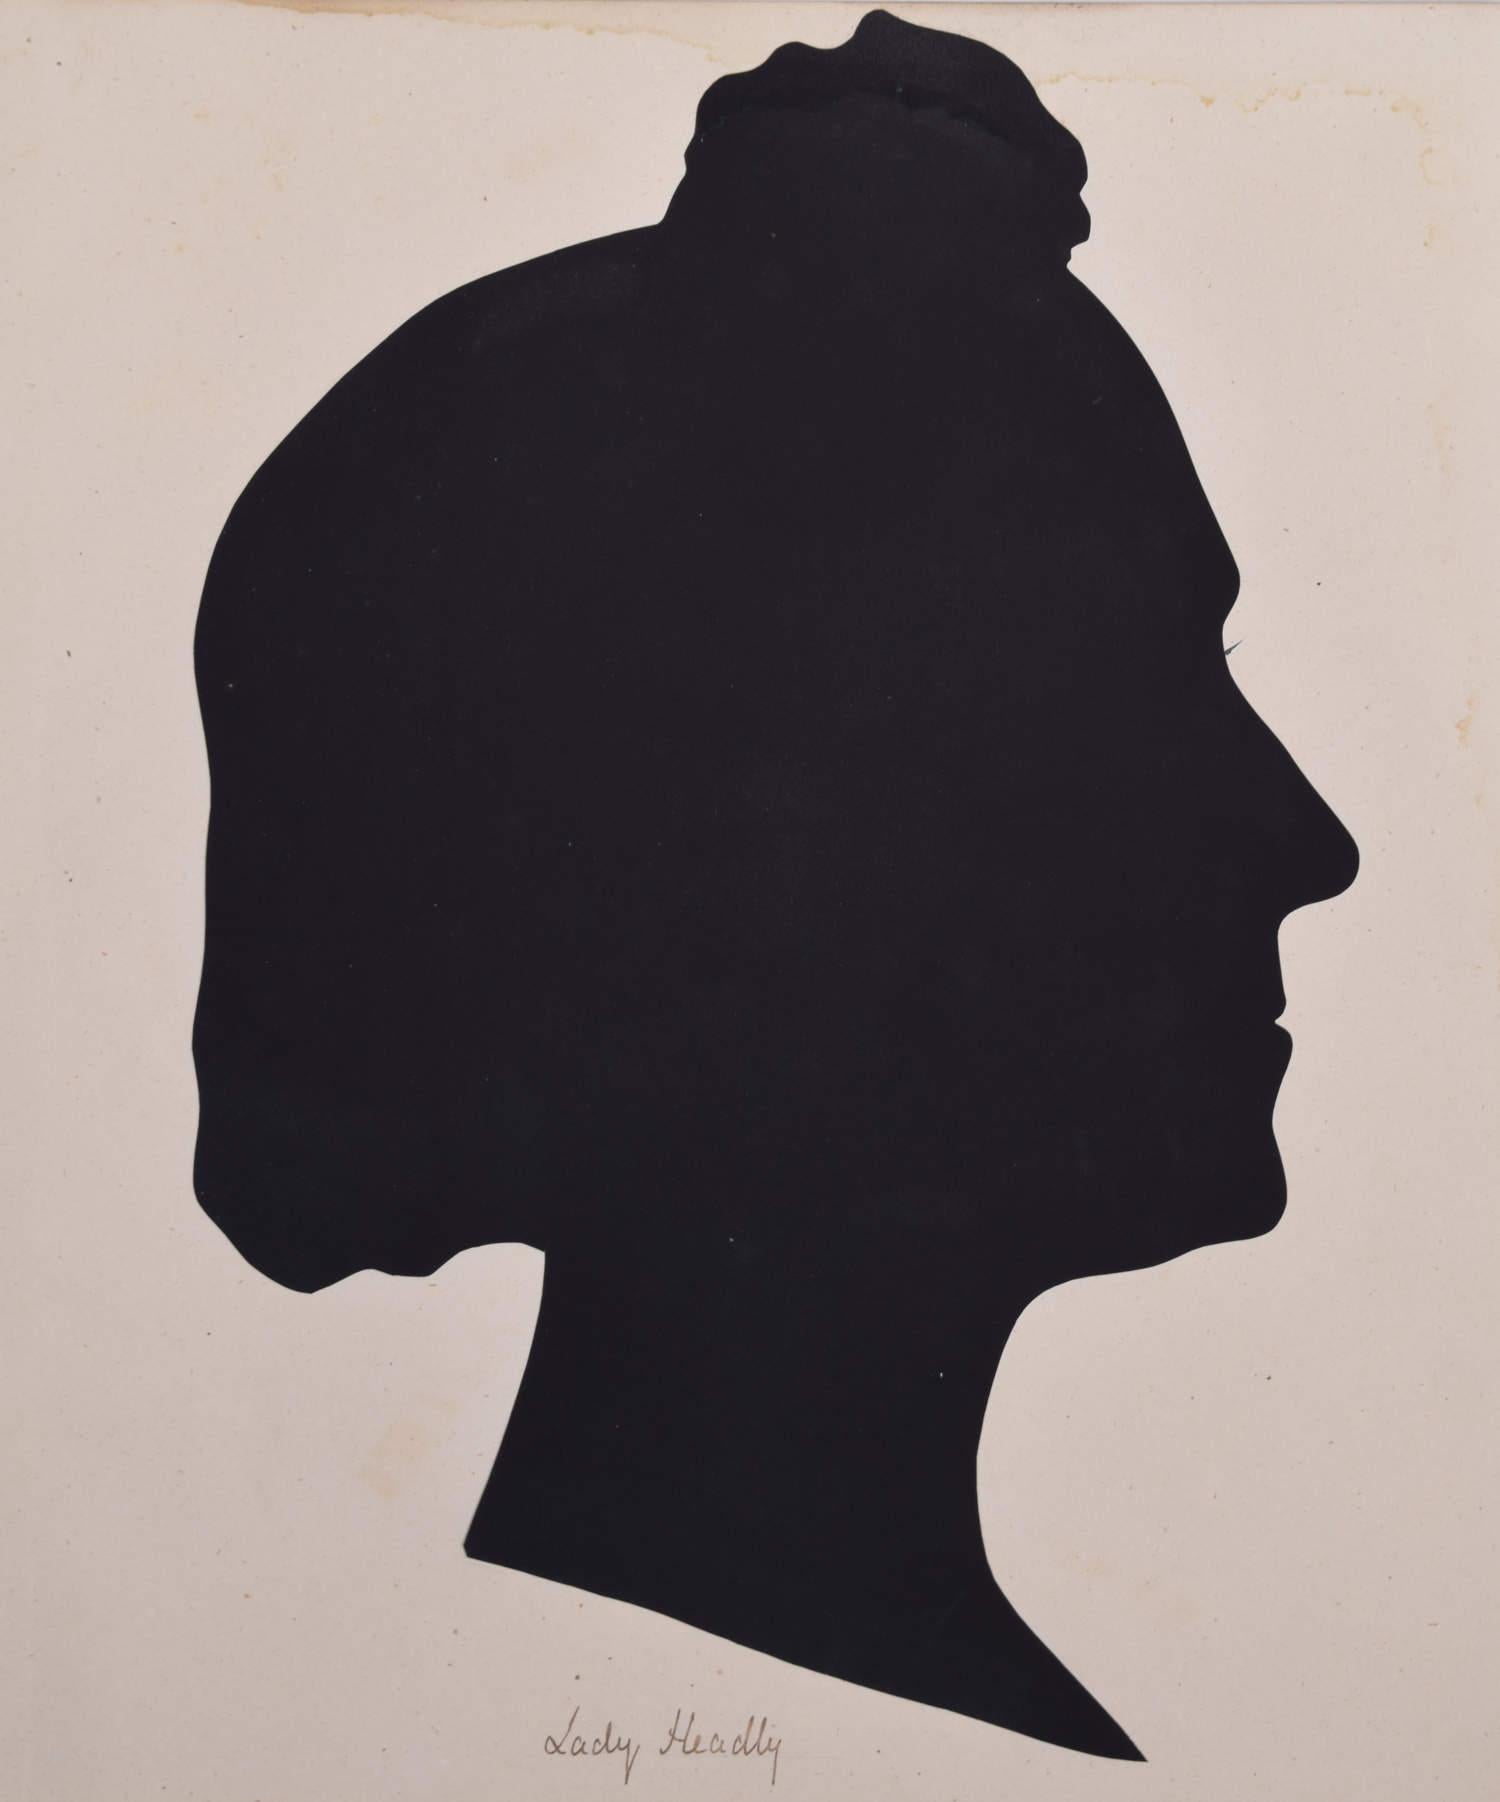 Unknown Black and White Photograph – Silhouette einer Dame aus dem neunzehnten Jahrhundert: Lady Headley